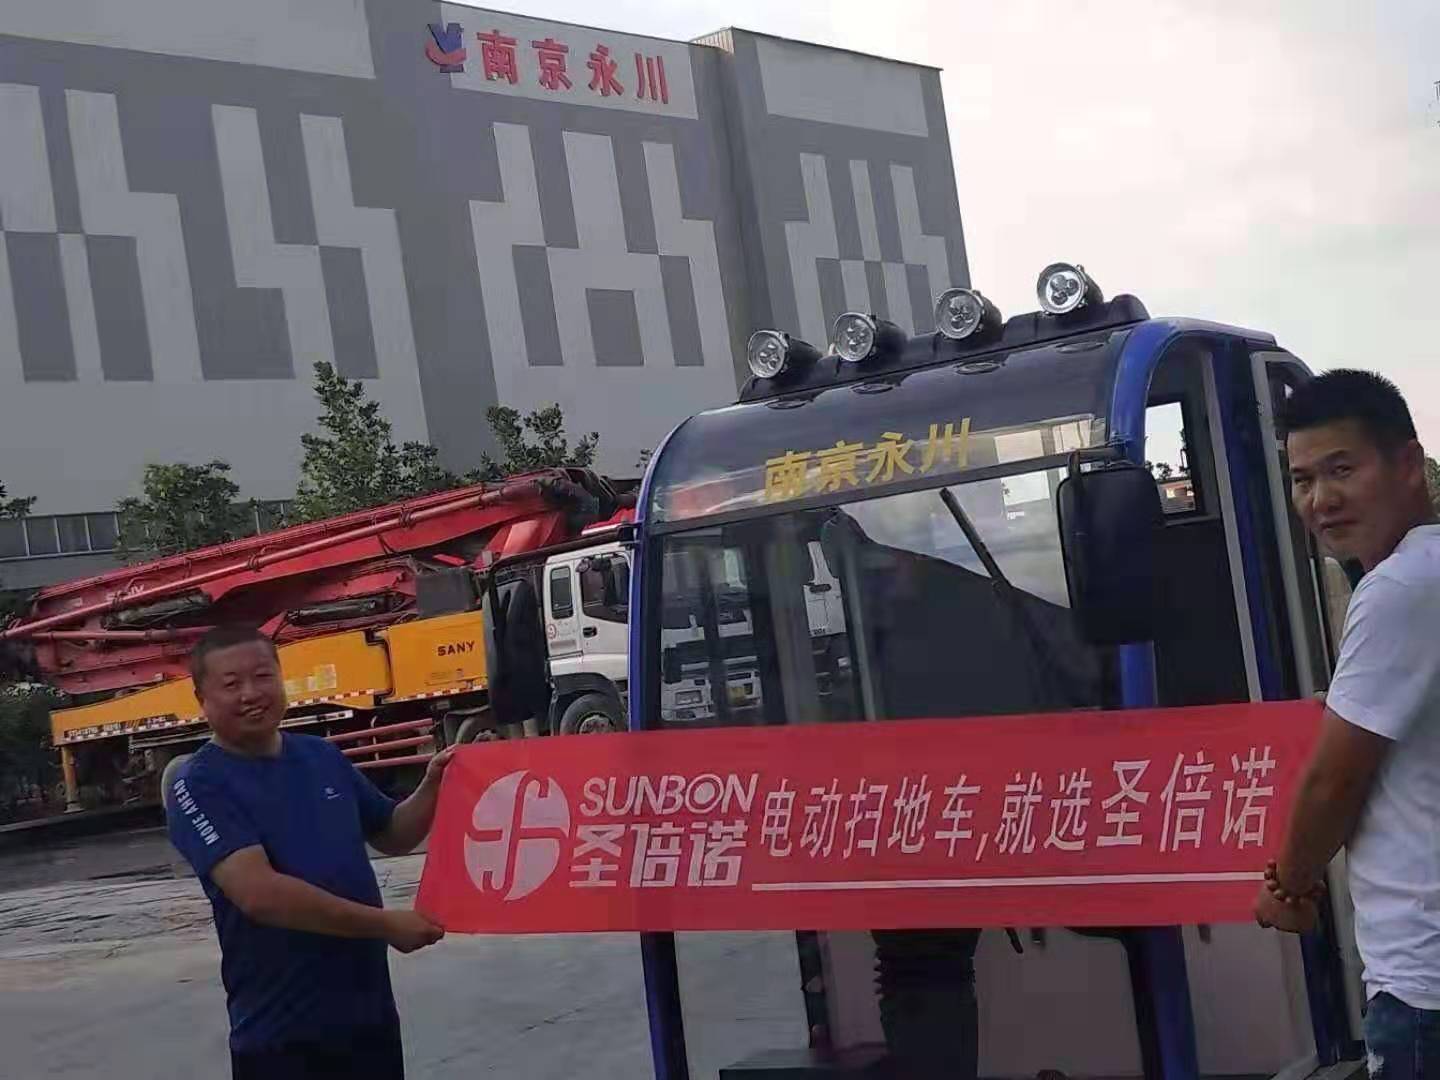  电动扫地车进驻南京永川混凝土有限公司